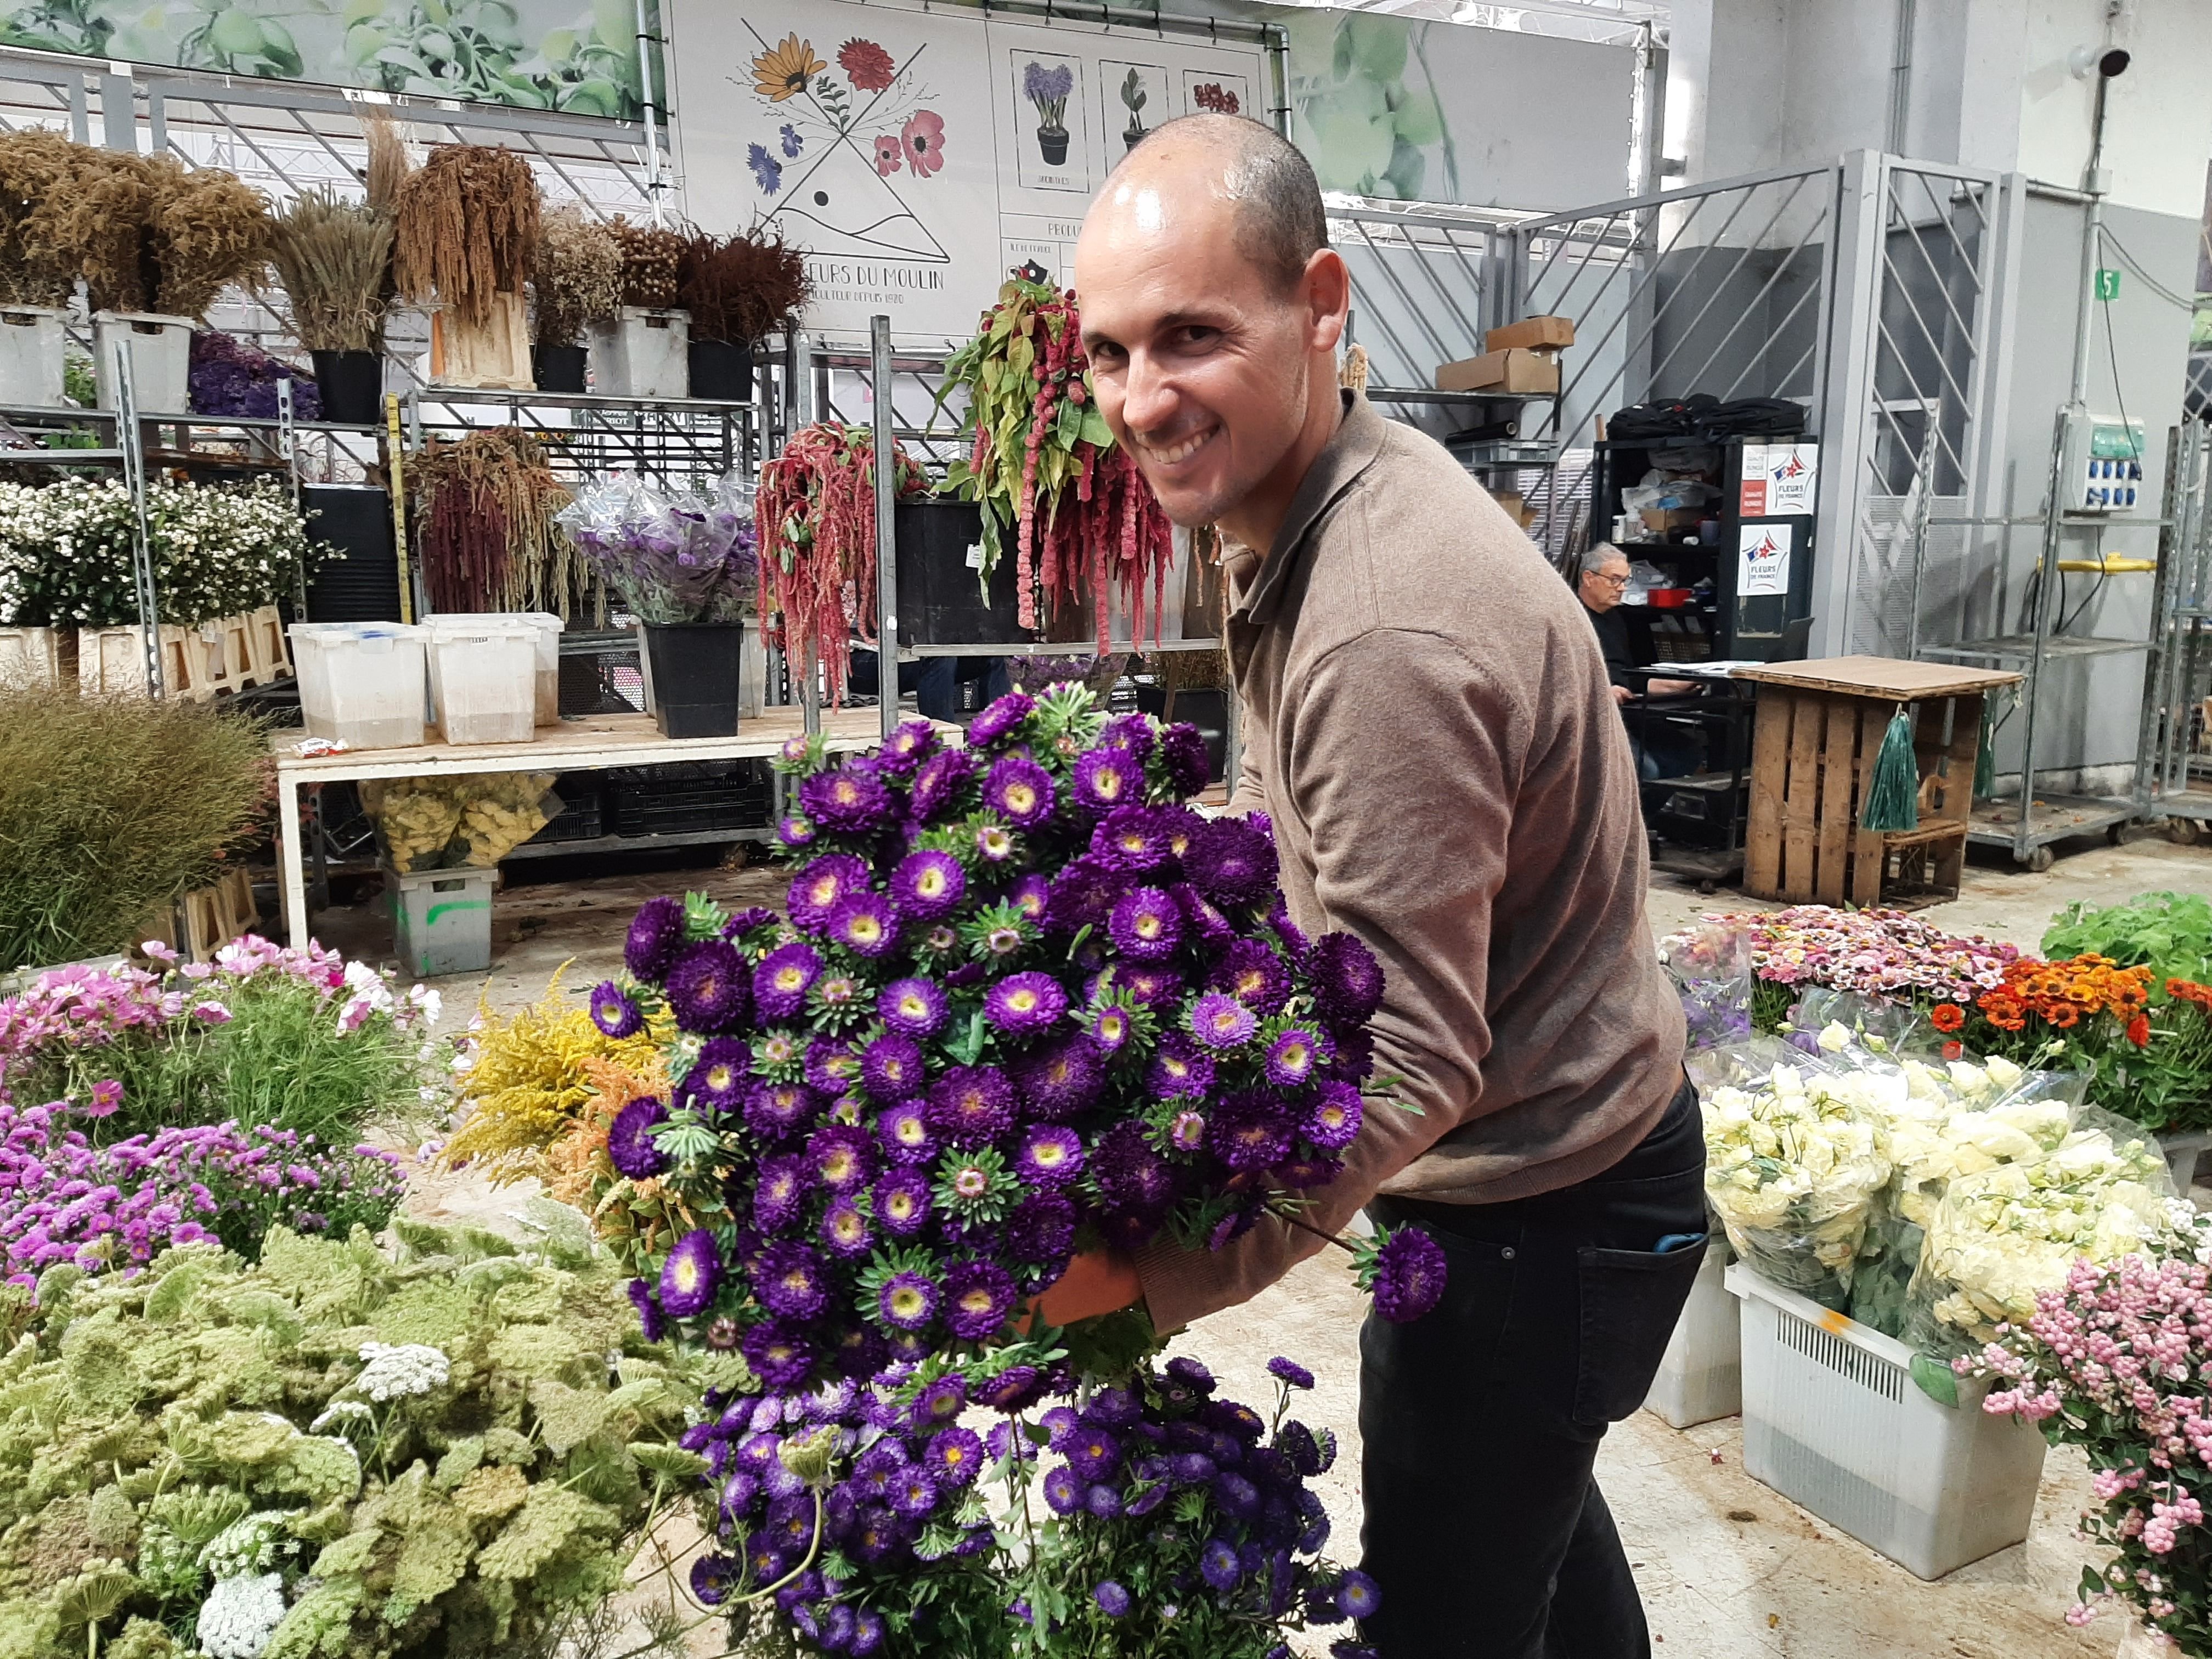 Rungis, le 7 septembre. Ludovic Mauregard (photo) et son père Olivier cultivent des fleurs champêtres en Seine-et-Marne qu'ils vendent ensuite au marché de Rungis. LP/Marine Legrand